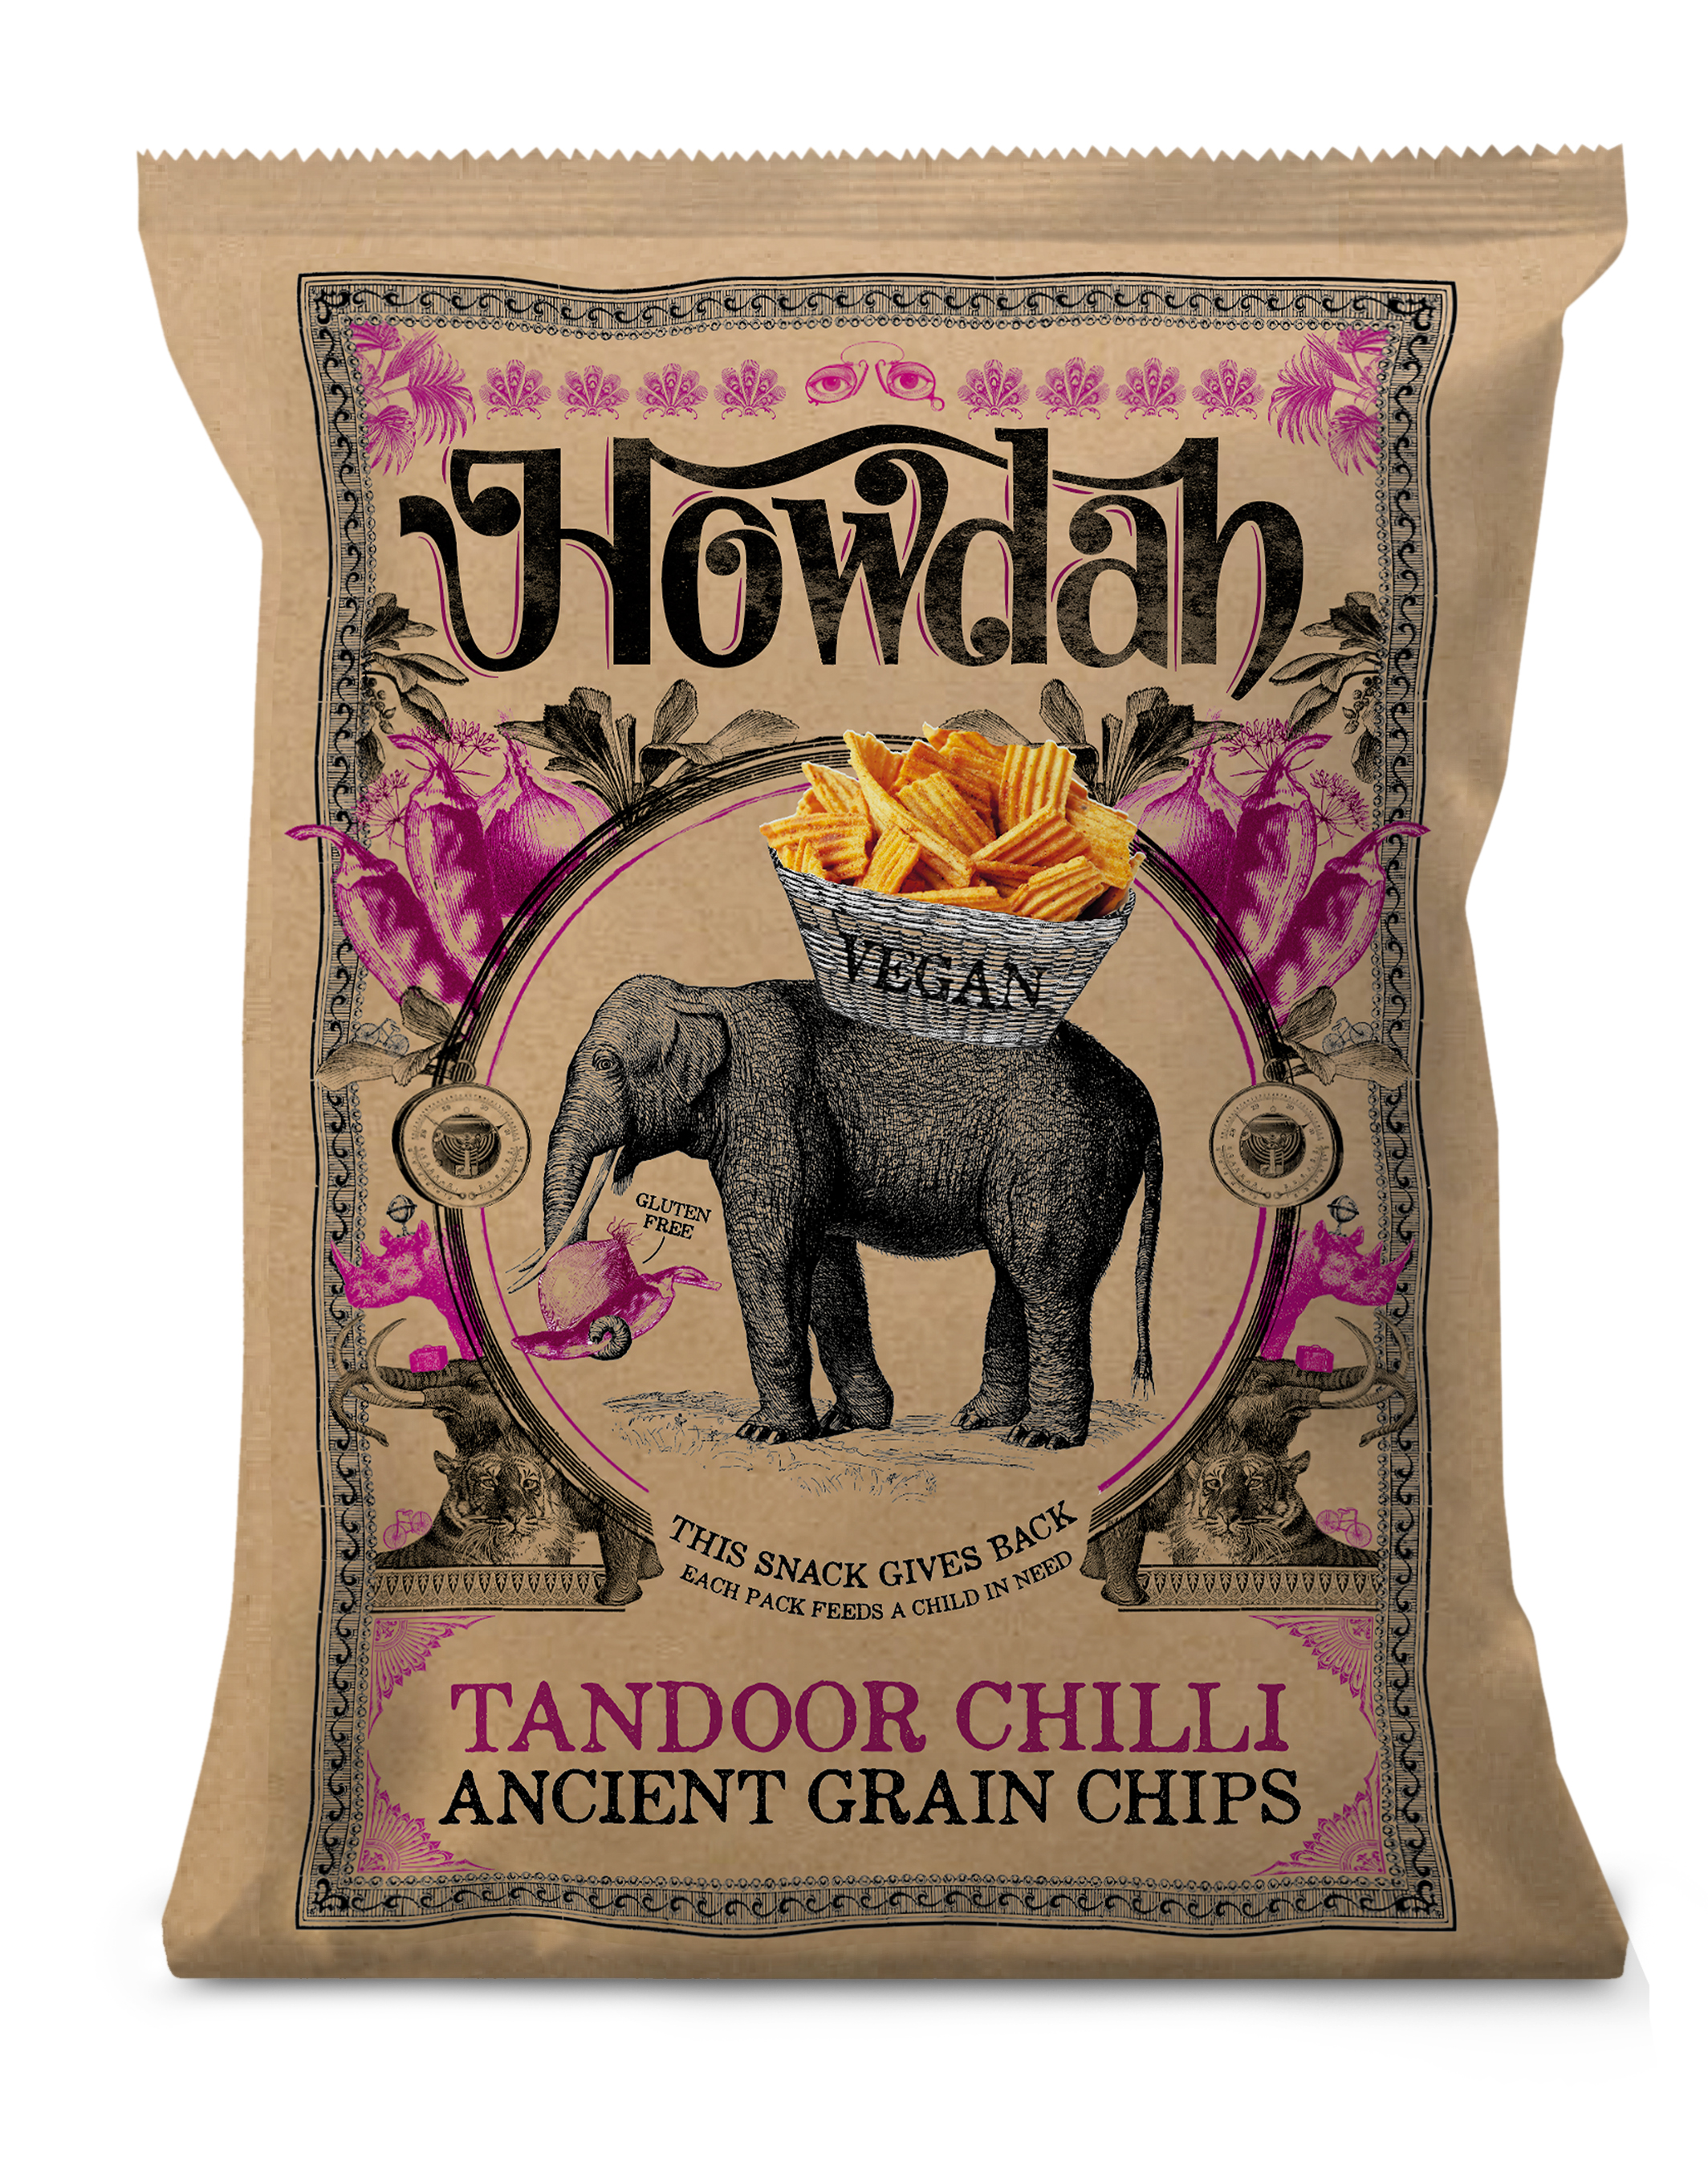 Howdah Tandoor Chilli Ancient Grain Chips 130 g.